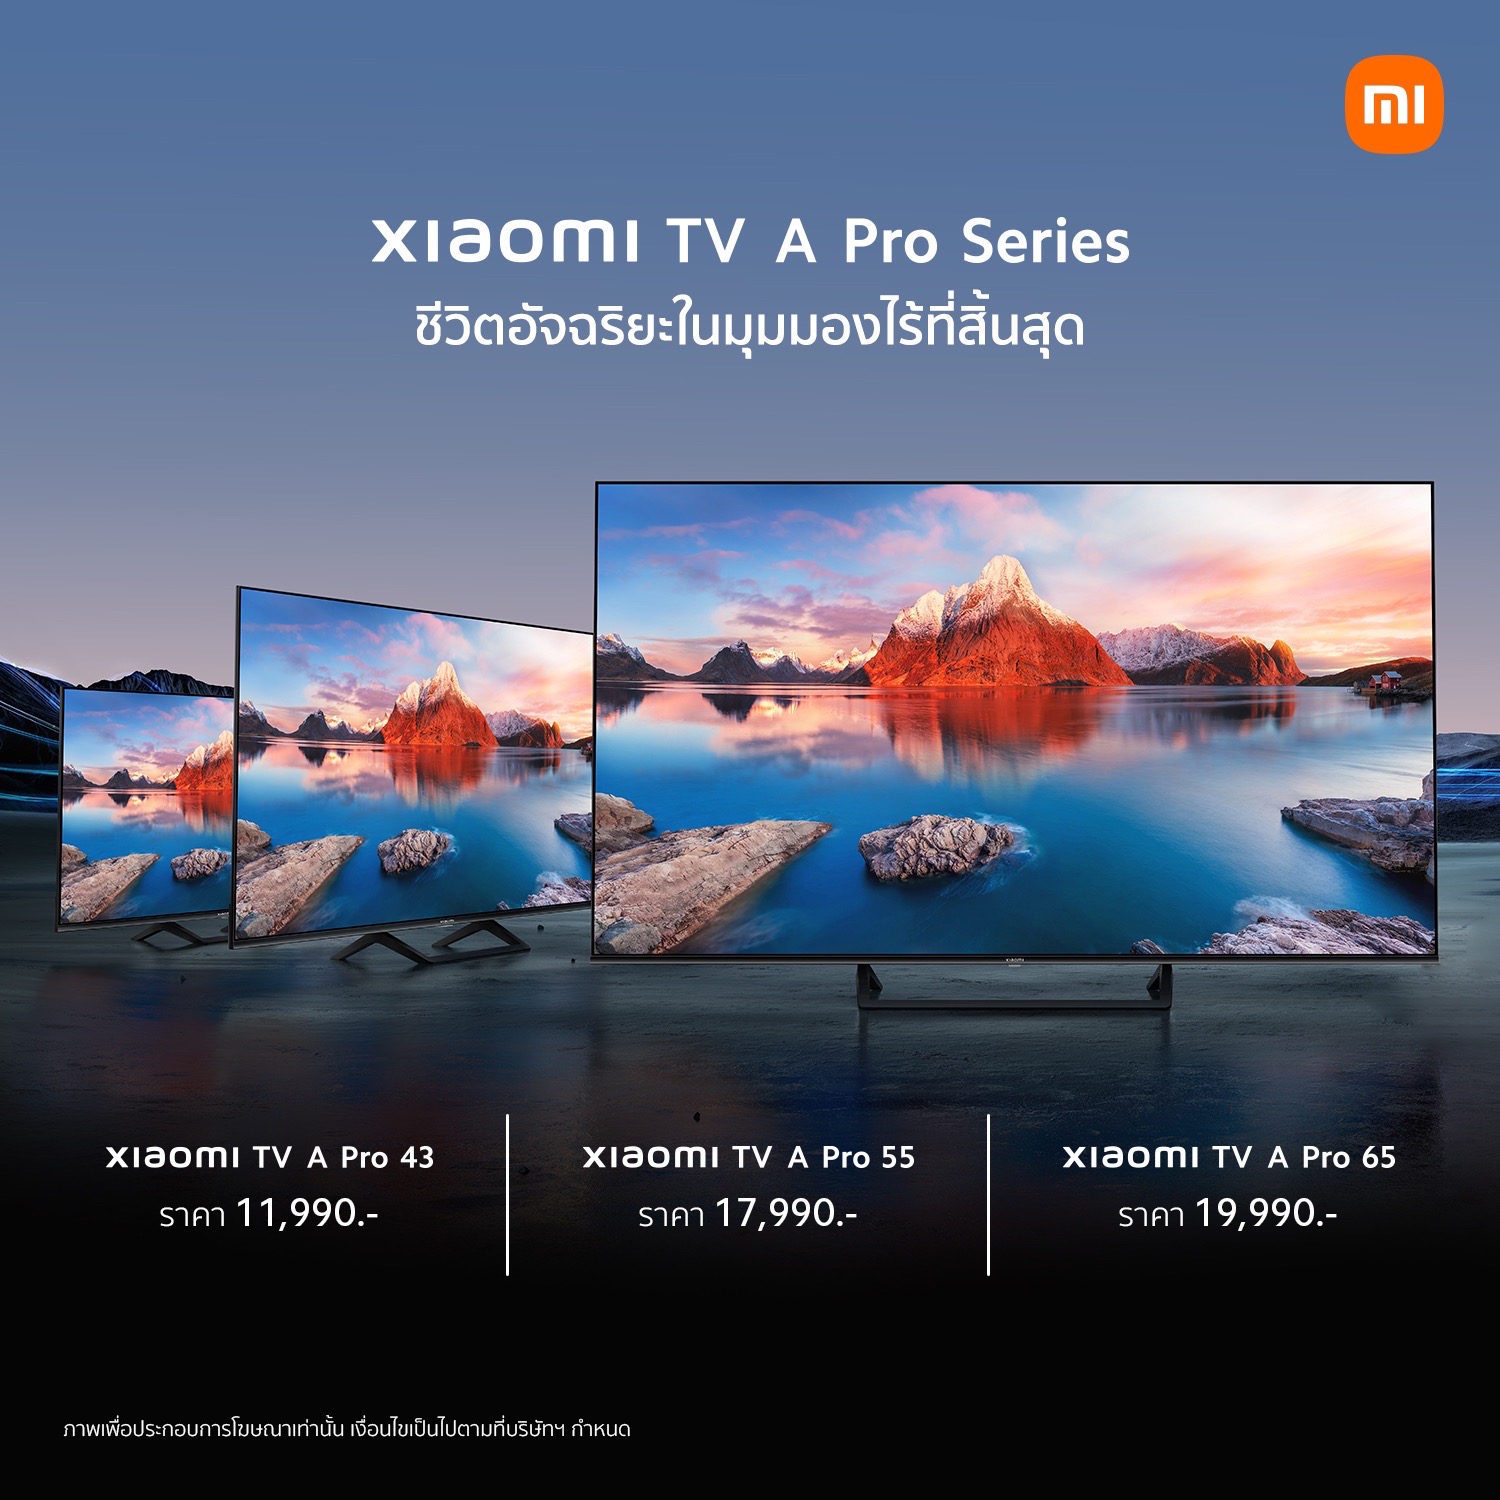 เสียวหมี่ ประเทศไทย วางจำหน่ายทีวีอัจฉริยะรุ่น Xiaomi TV A Pro Series ในราคาเริ่มต้นเพียง 11,990 บาท